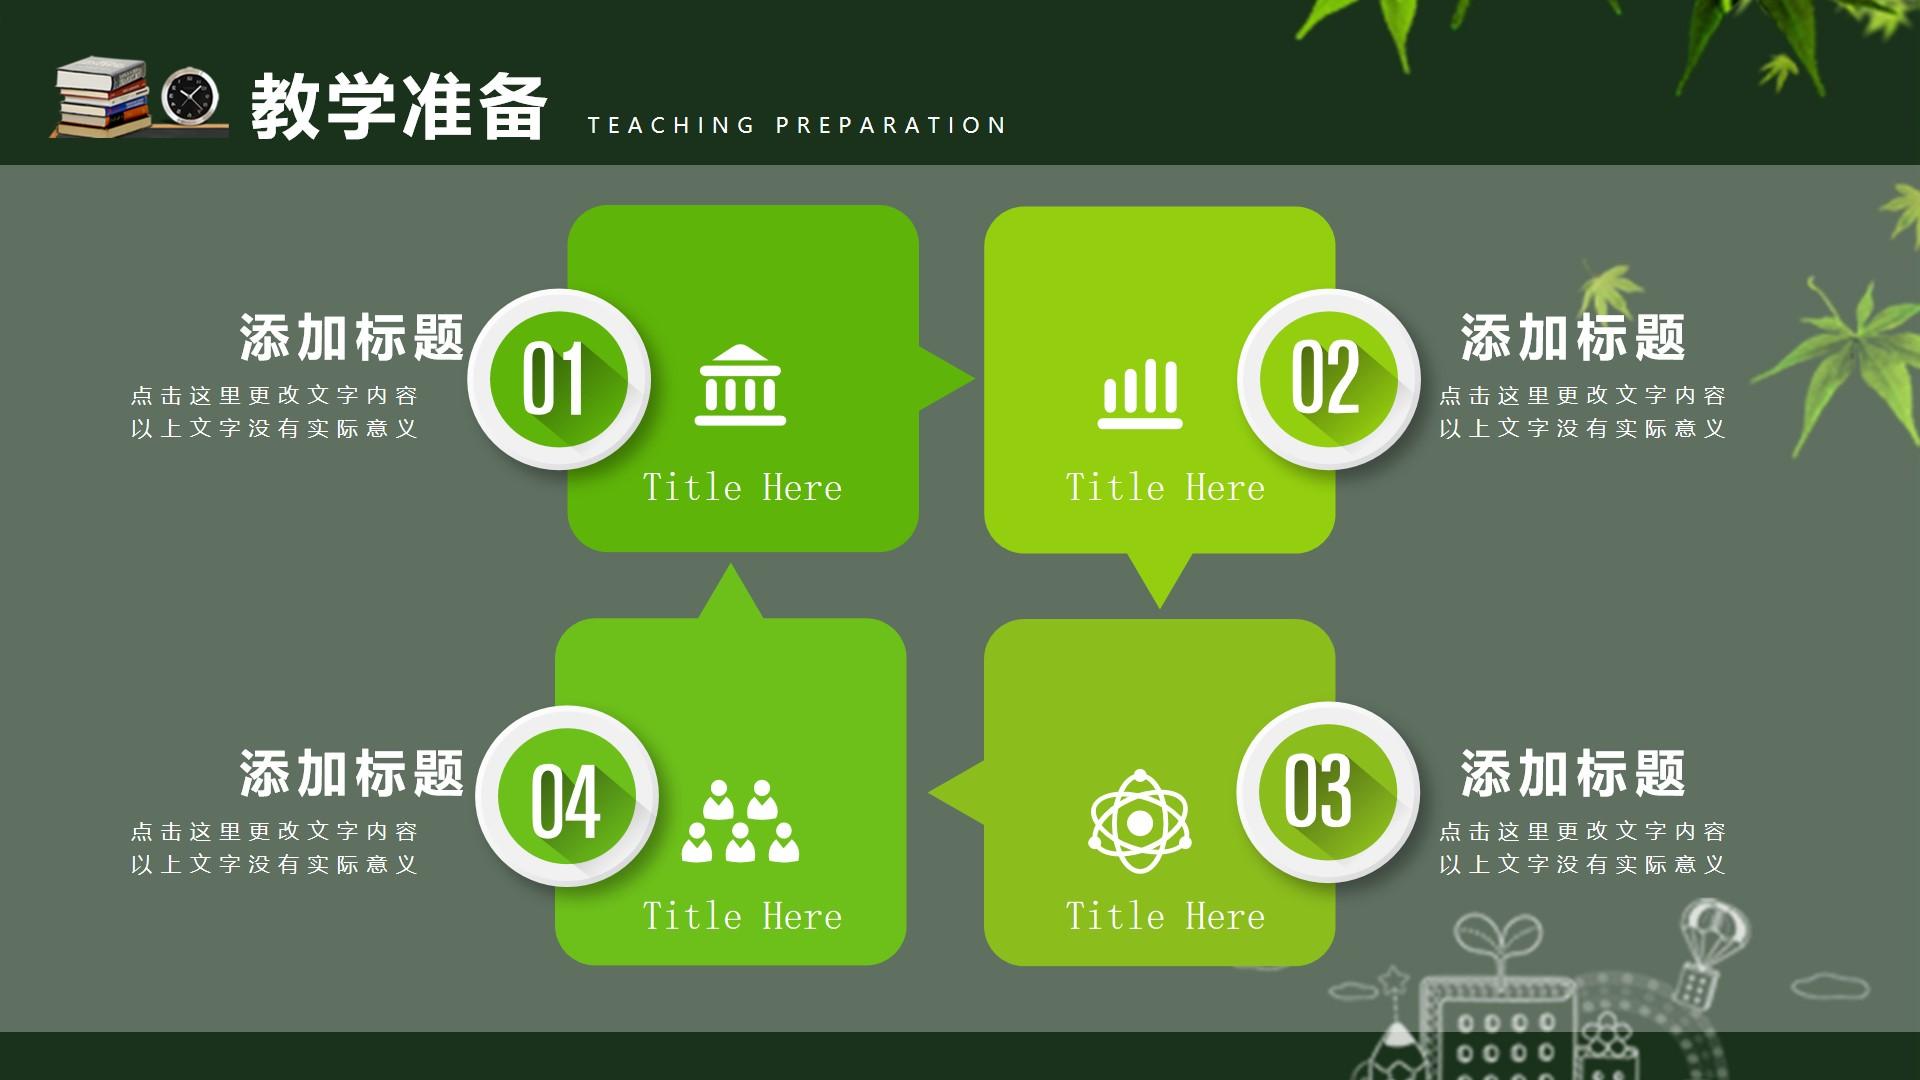 教育教学绿色白色实景卡通意义 teaching preparation云素材PPT模板1672664119527